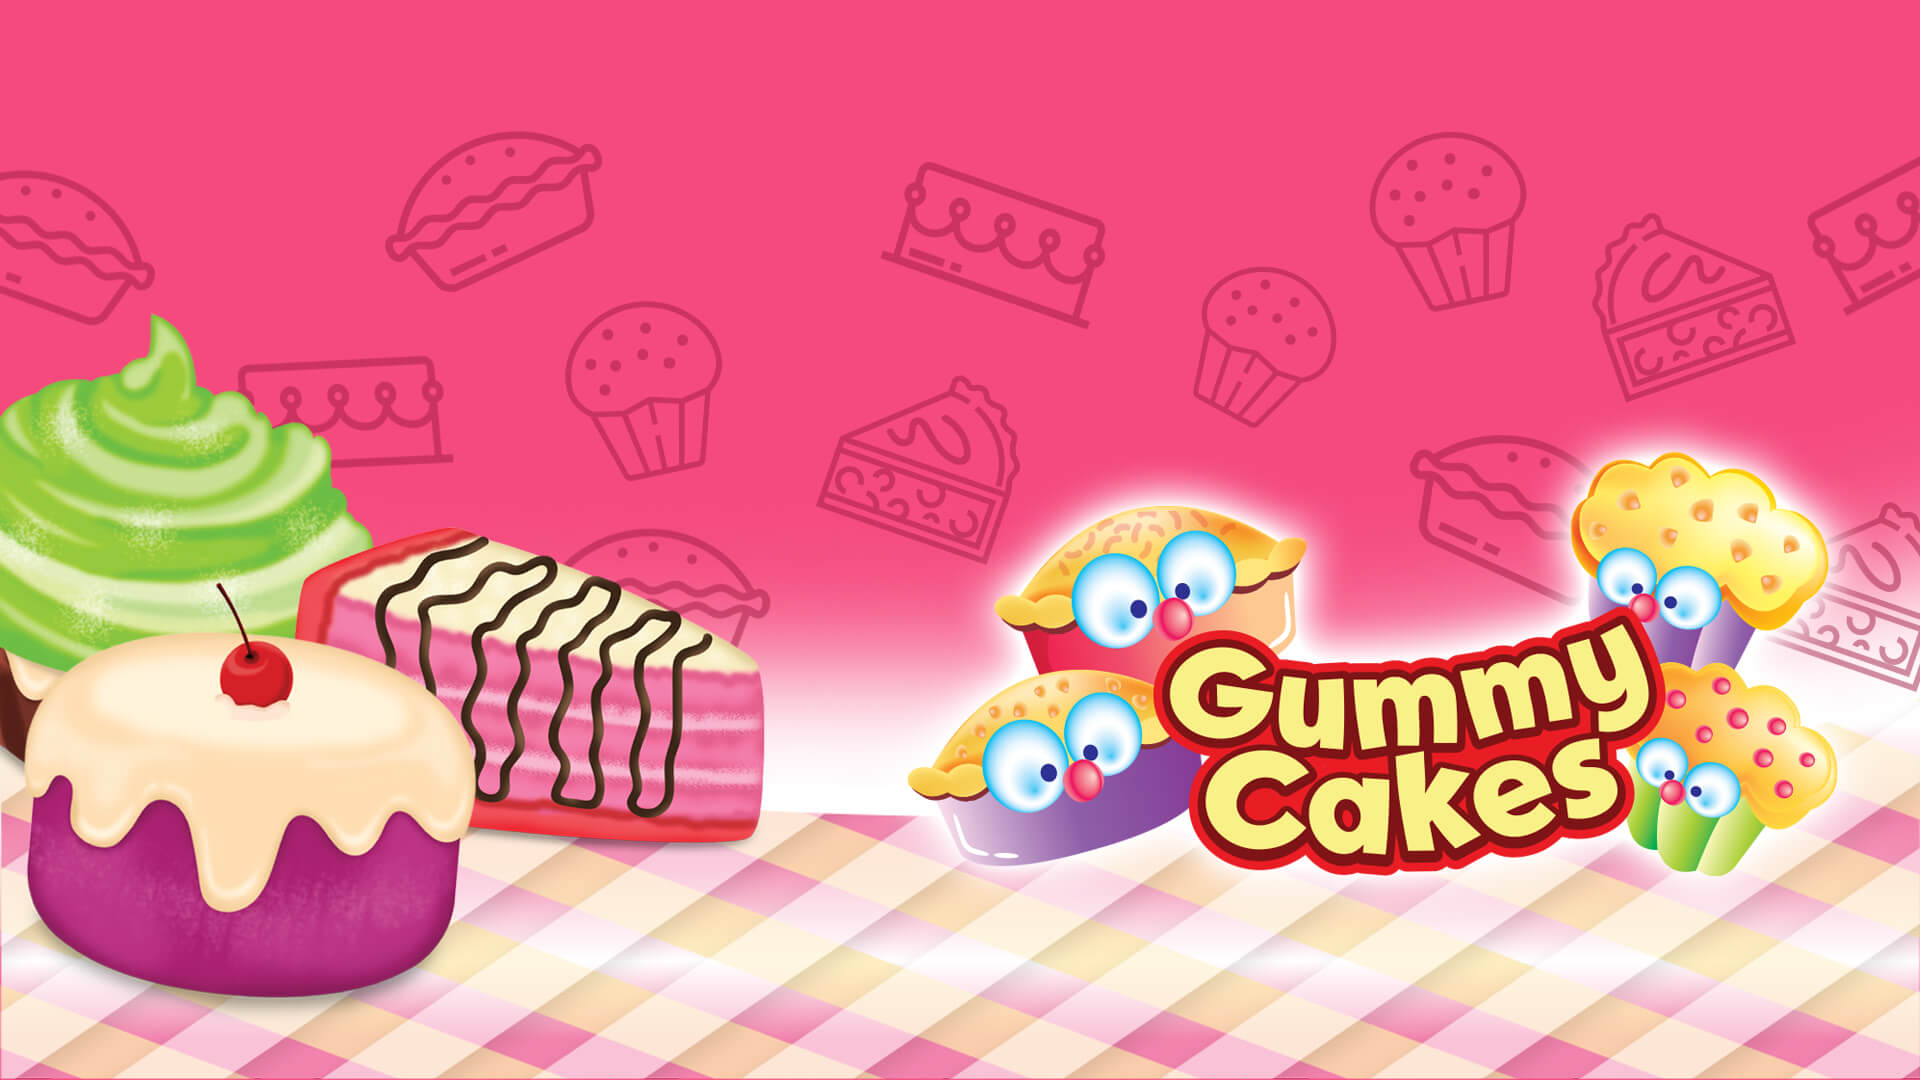 Gummy Cakes